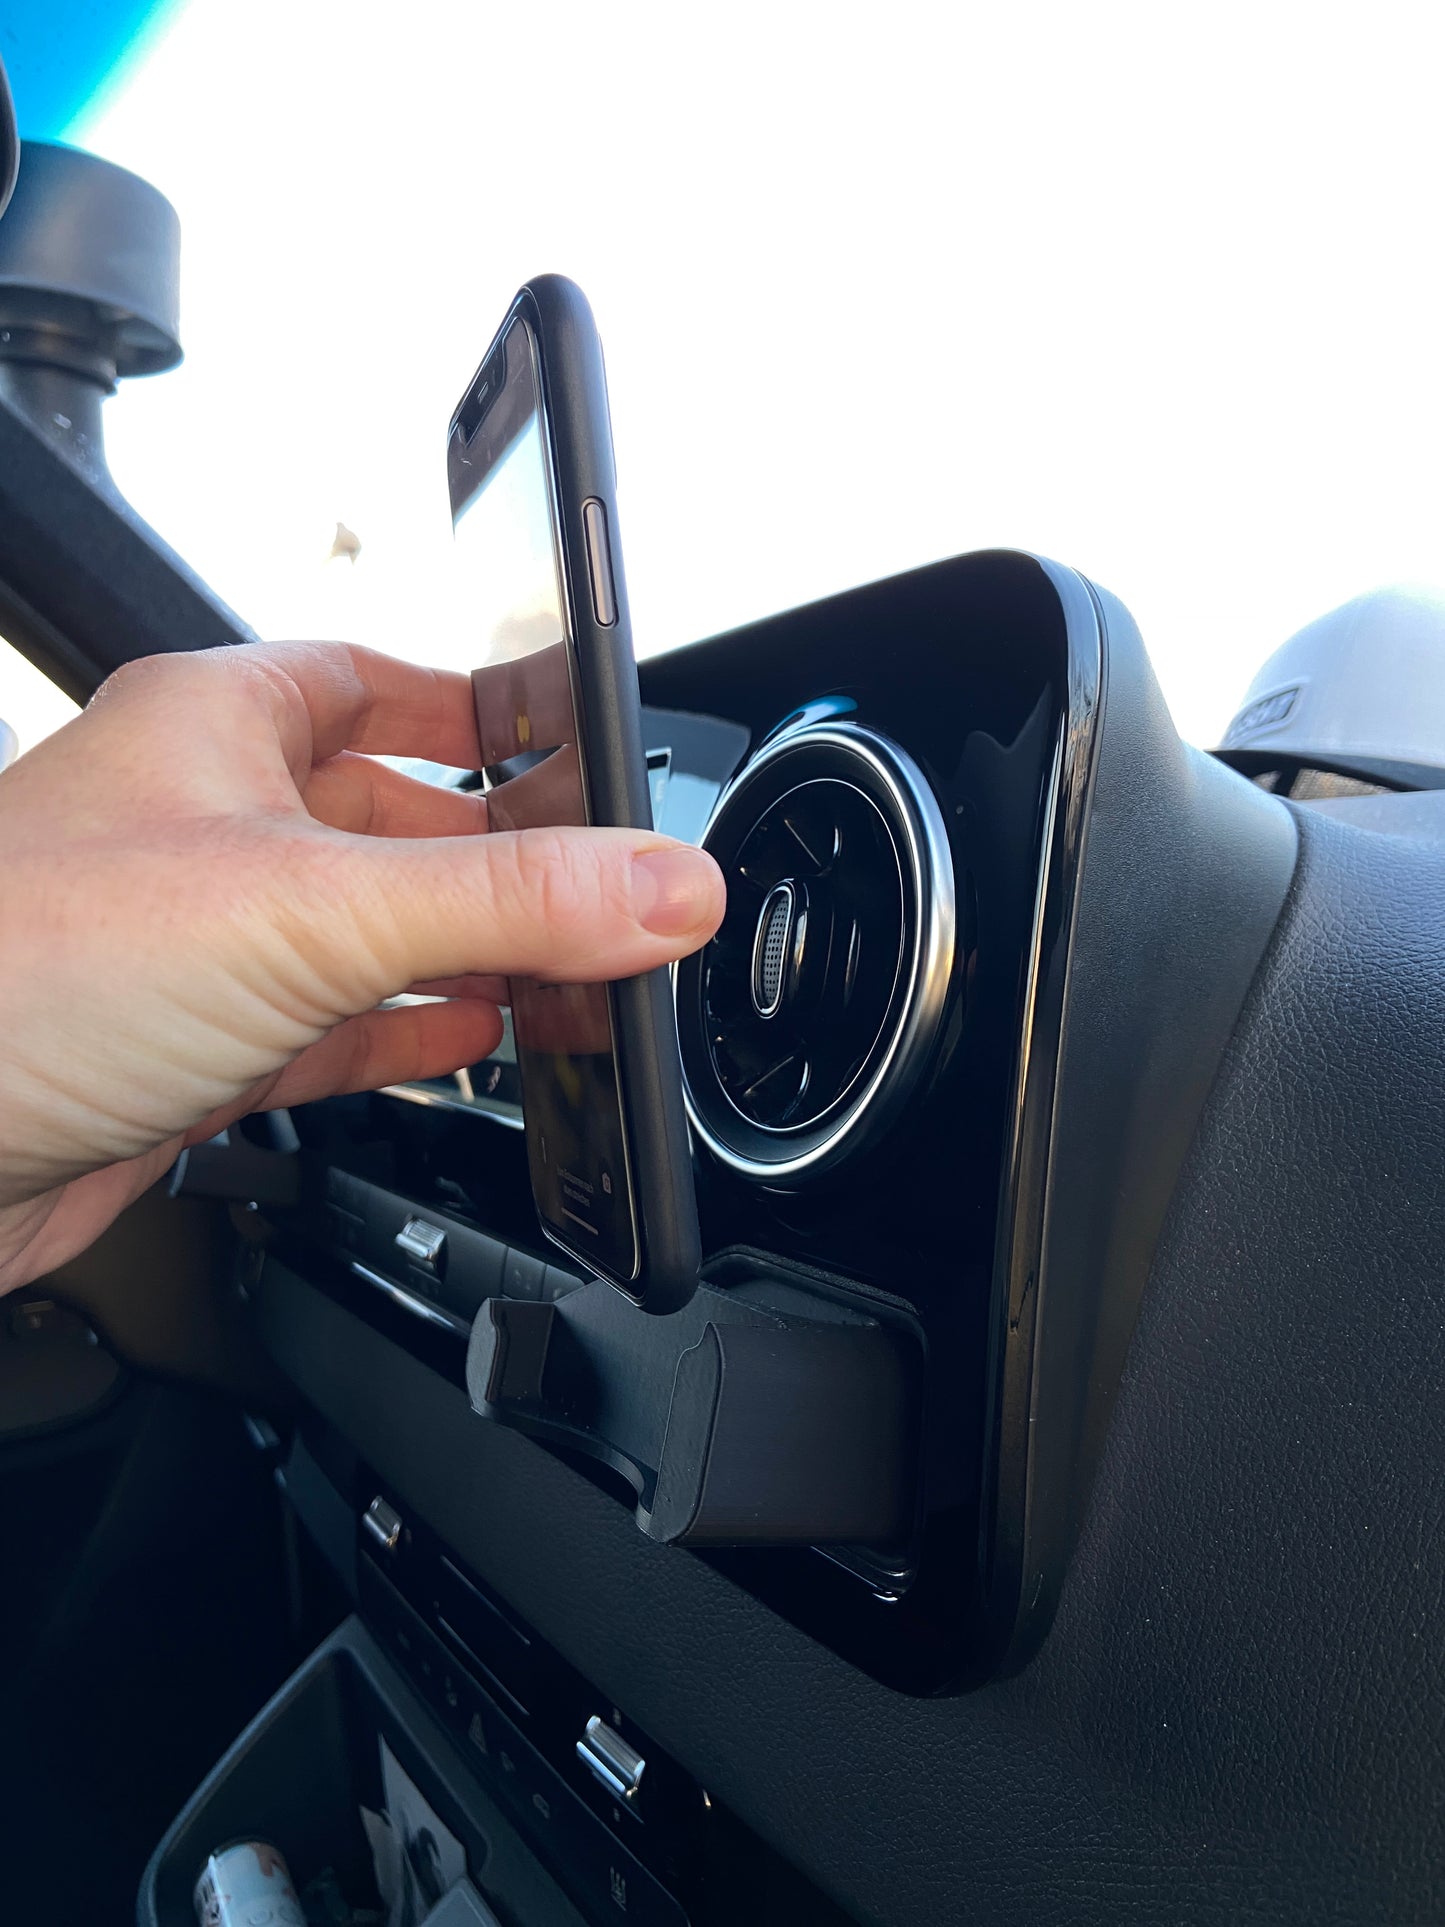 Smartphone Handyhalter passend für Mercedes Sprinter W907 - Sichere und moderne Lösung für dein Vanlife Abenteuer, Roadtrip, Urlaub, Reise